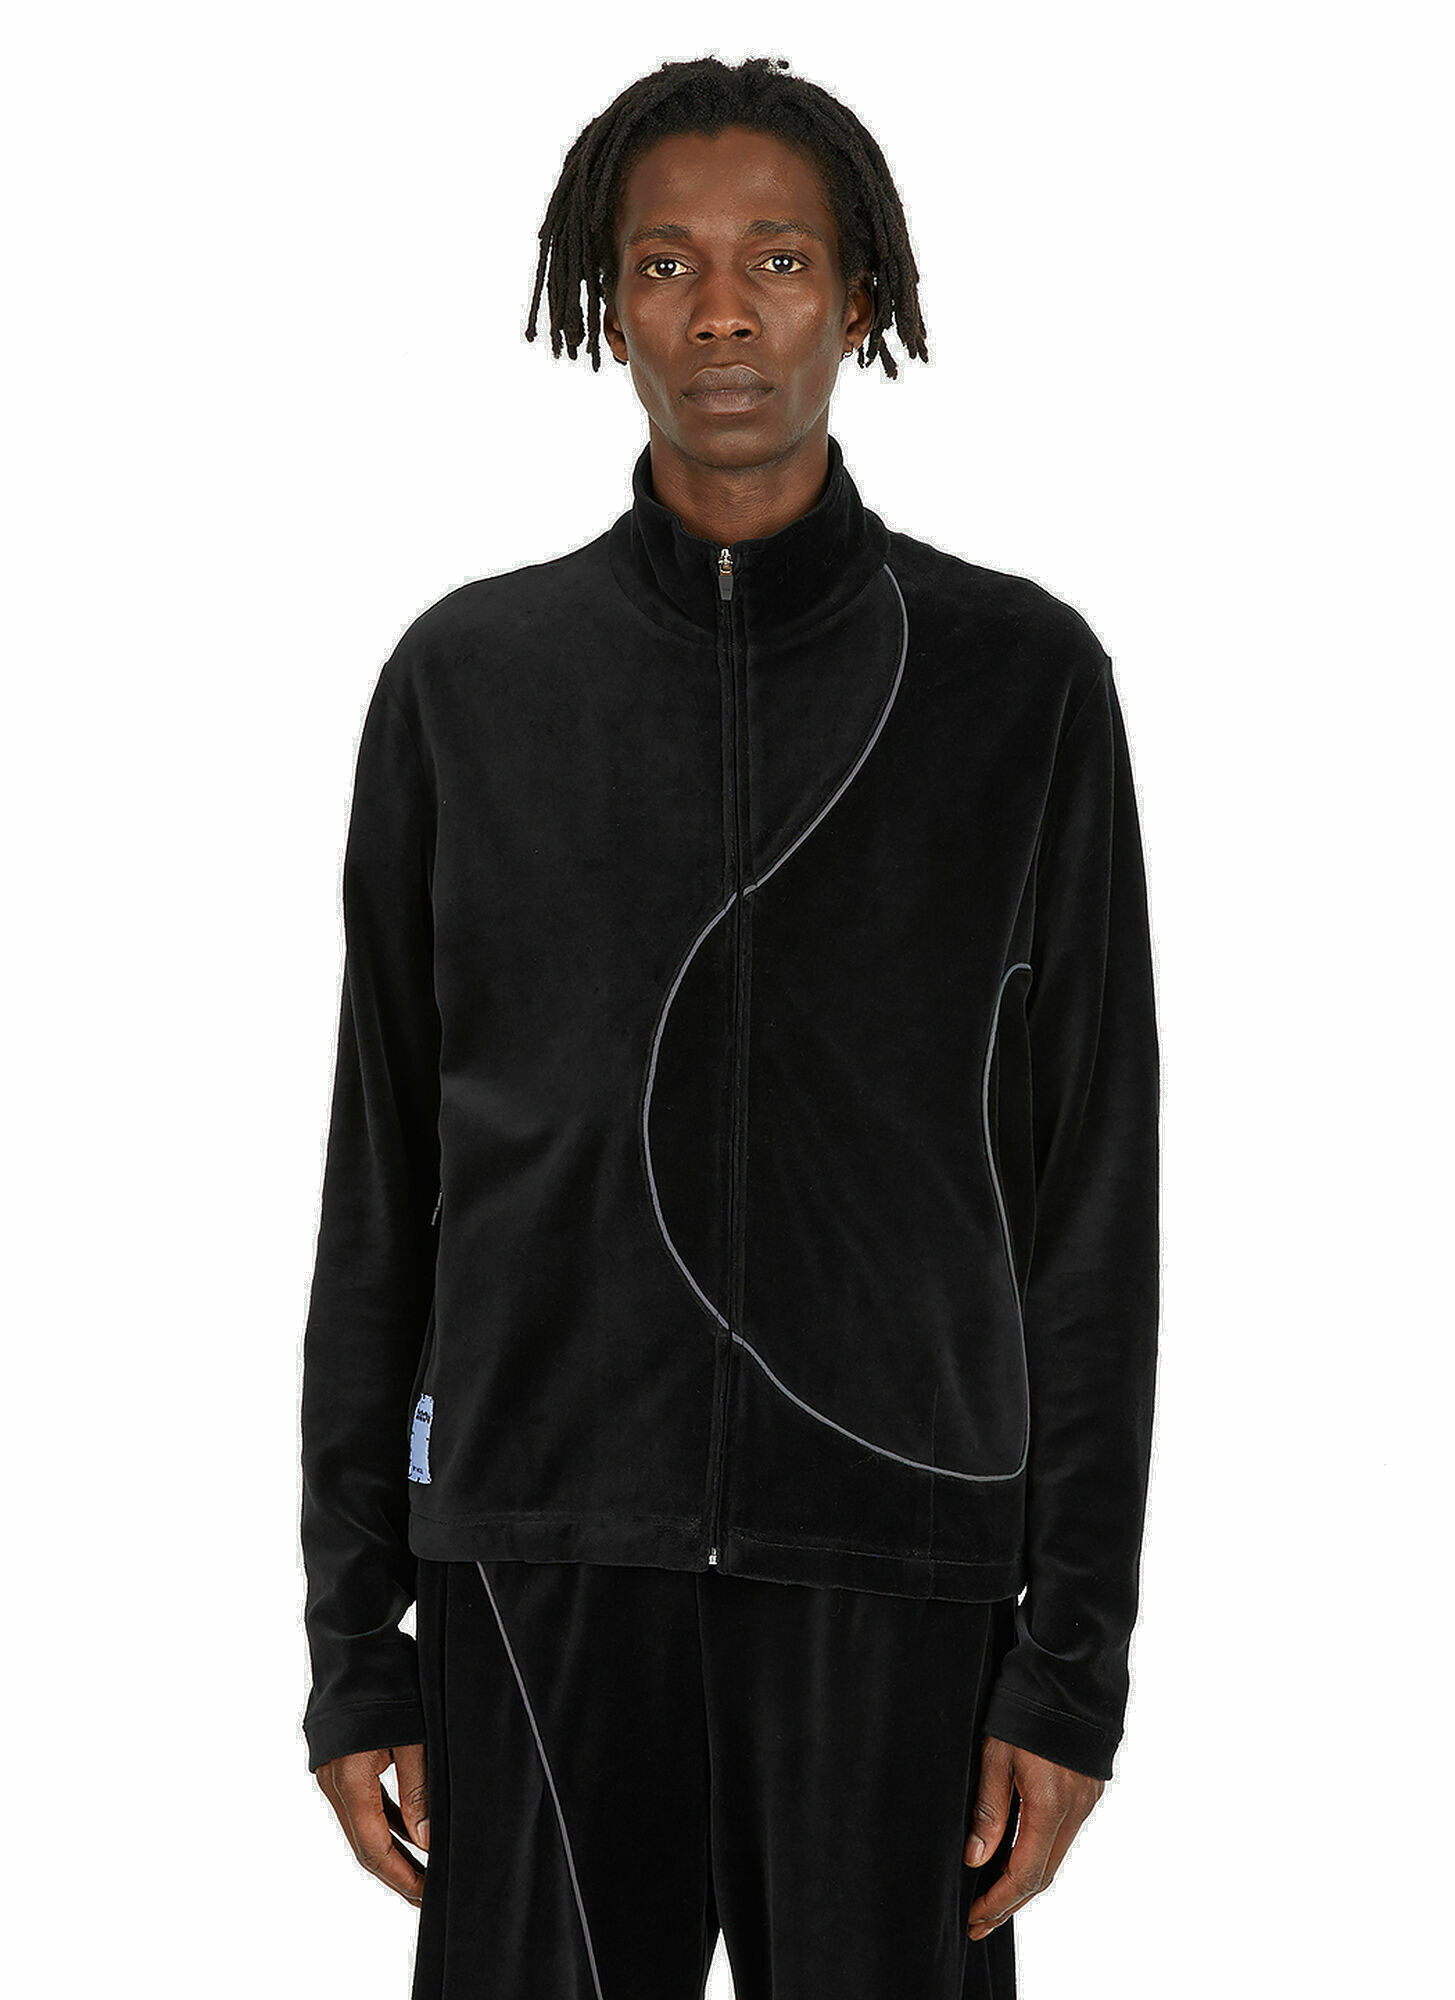 Gloop Velour Sweatshirt in Black McQ Alexander McQueen